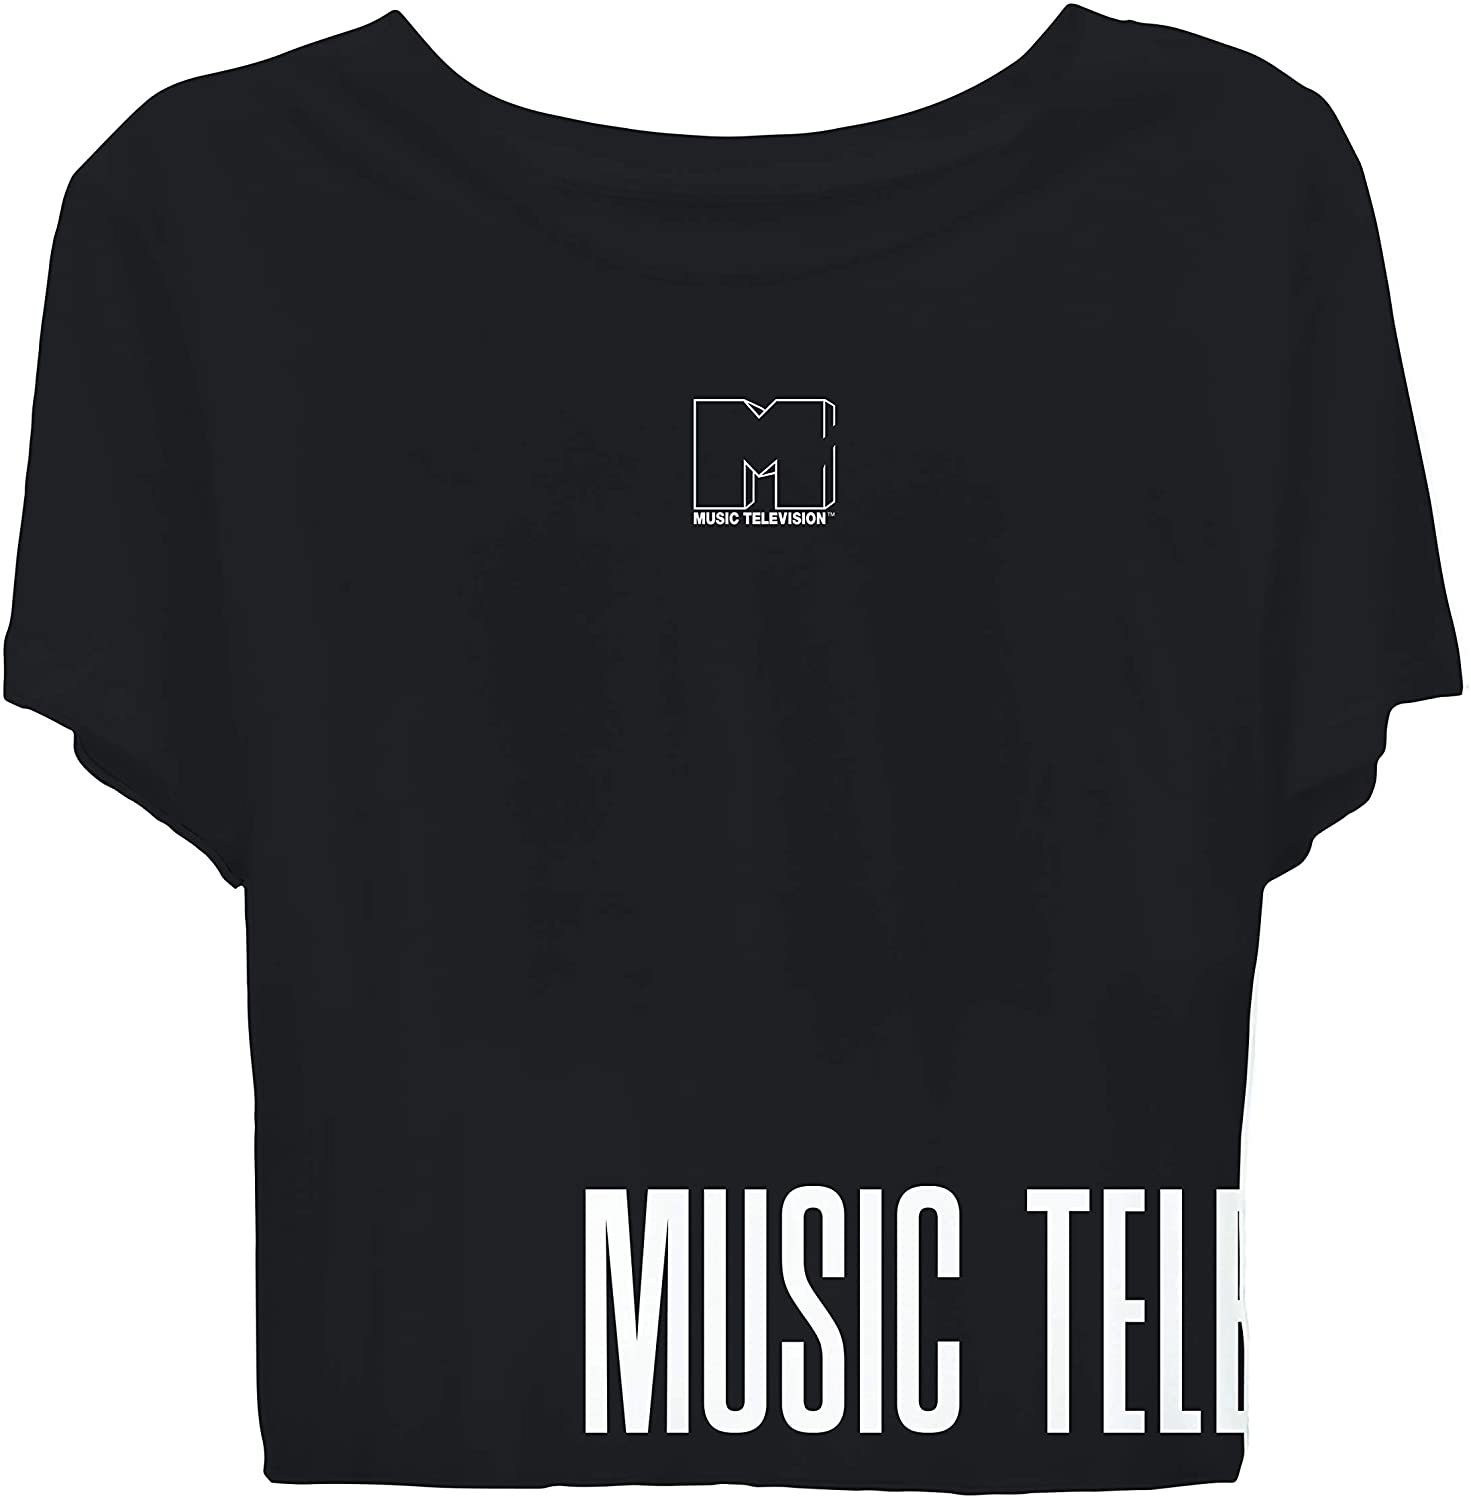 MTV Ladies Short Sleeve Shirt - #TBT Ladies 1980's Clothing - I Want My Logo Cropped Short Sleeve Tee Black, Medium - image 1 of 3